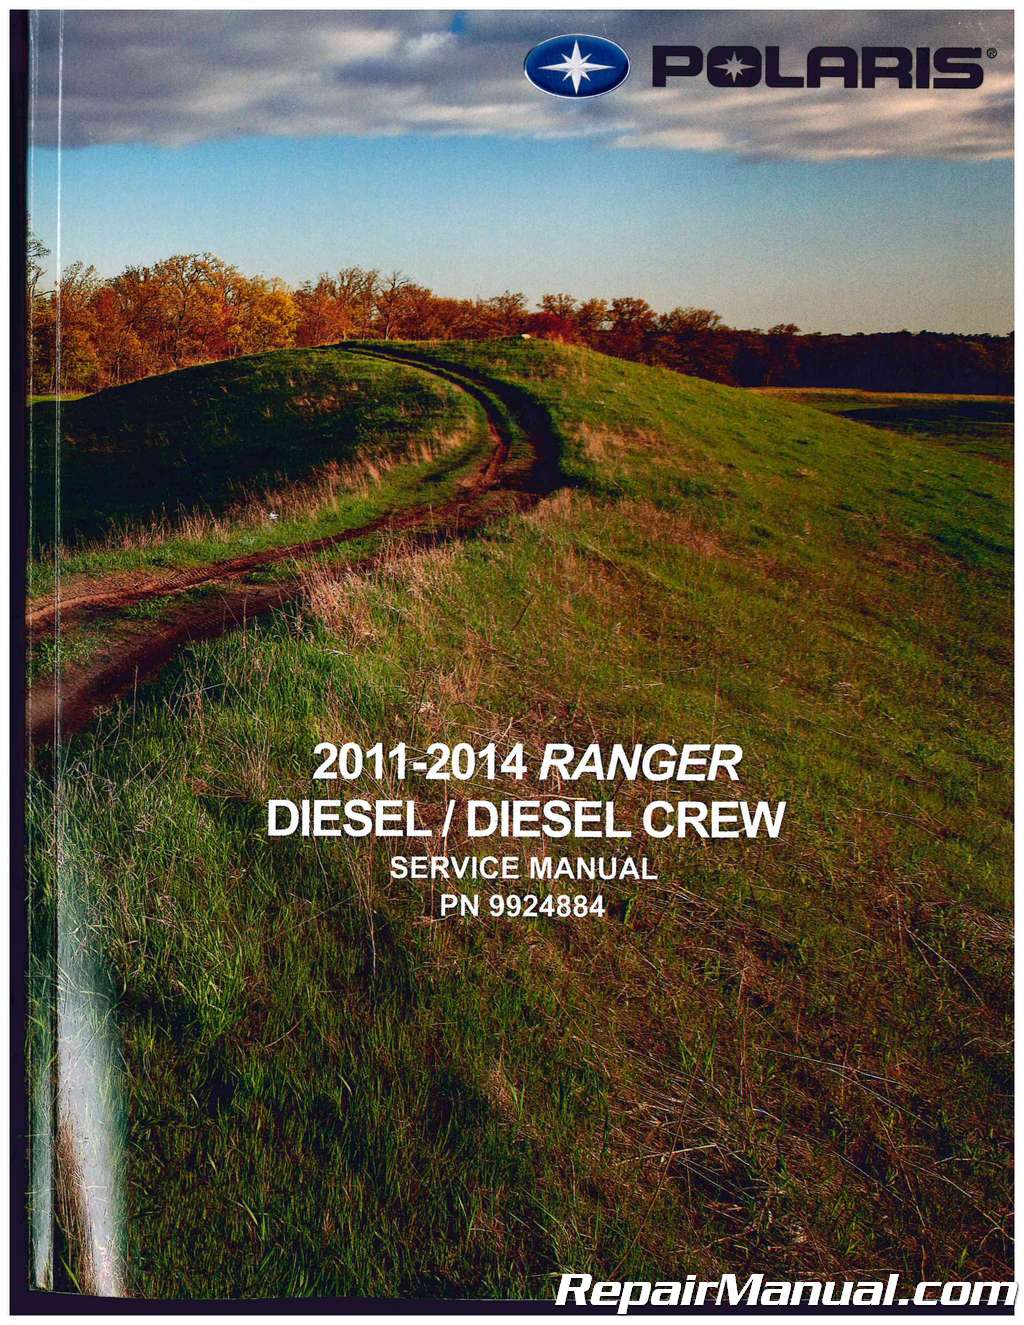 Diesel Crew 2015 2016 2017 2018 service manual in binder Polaris Ranger Diesel 